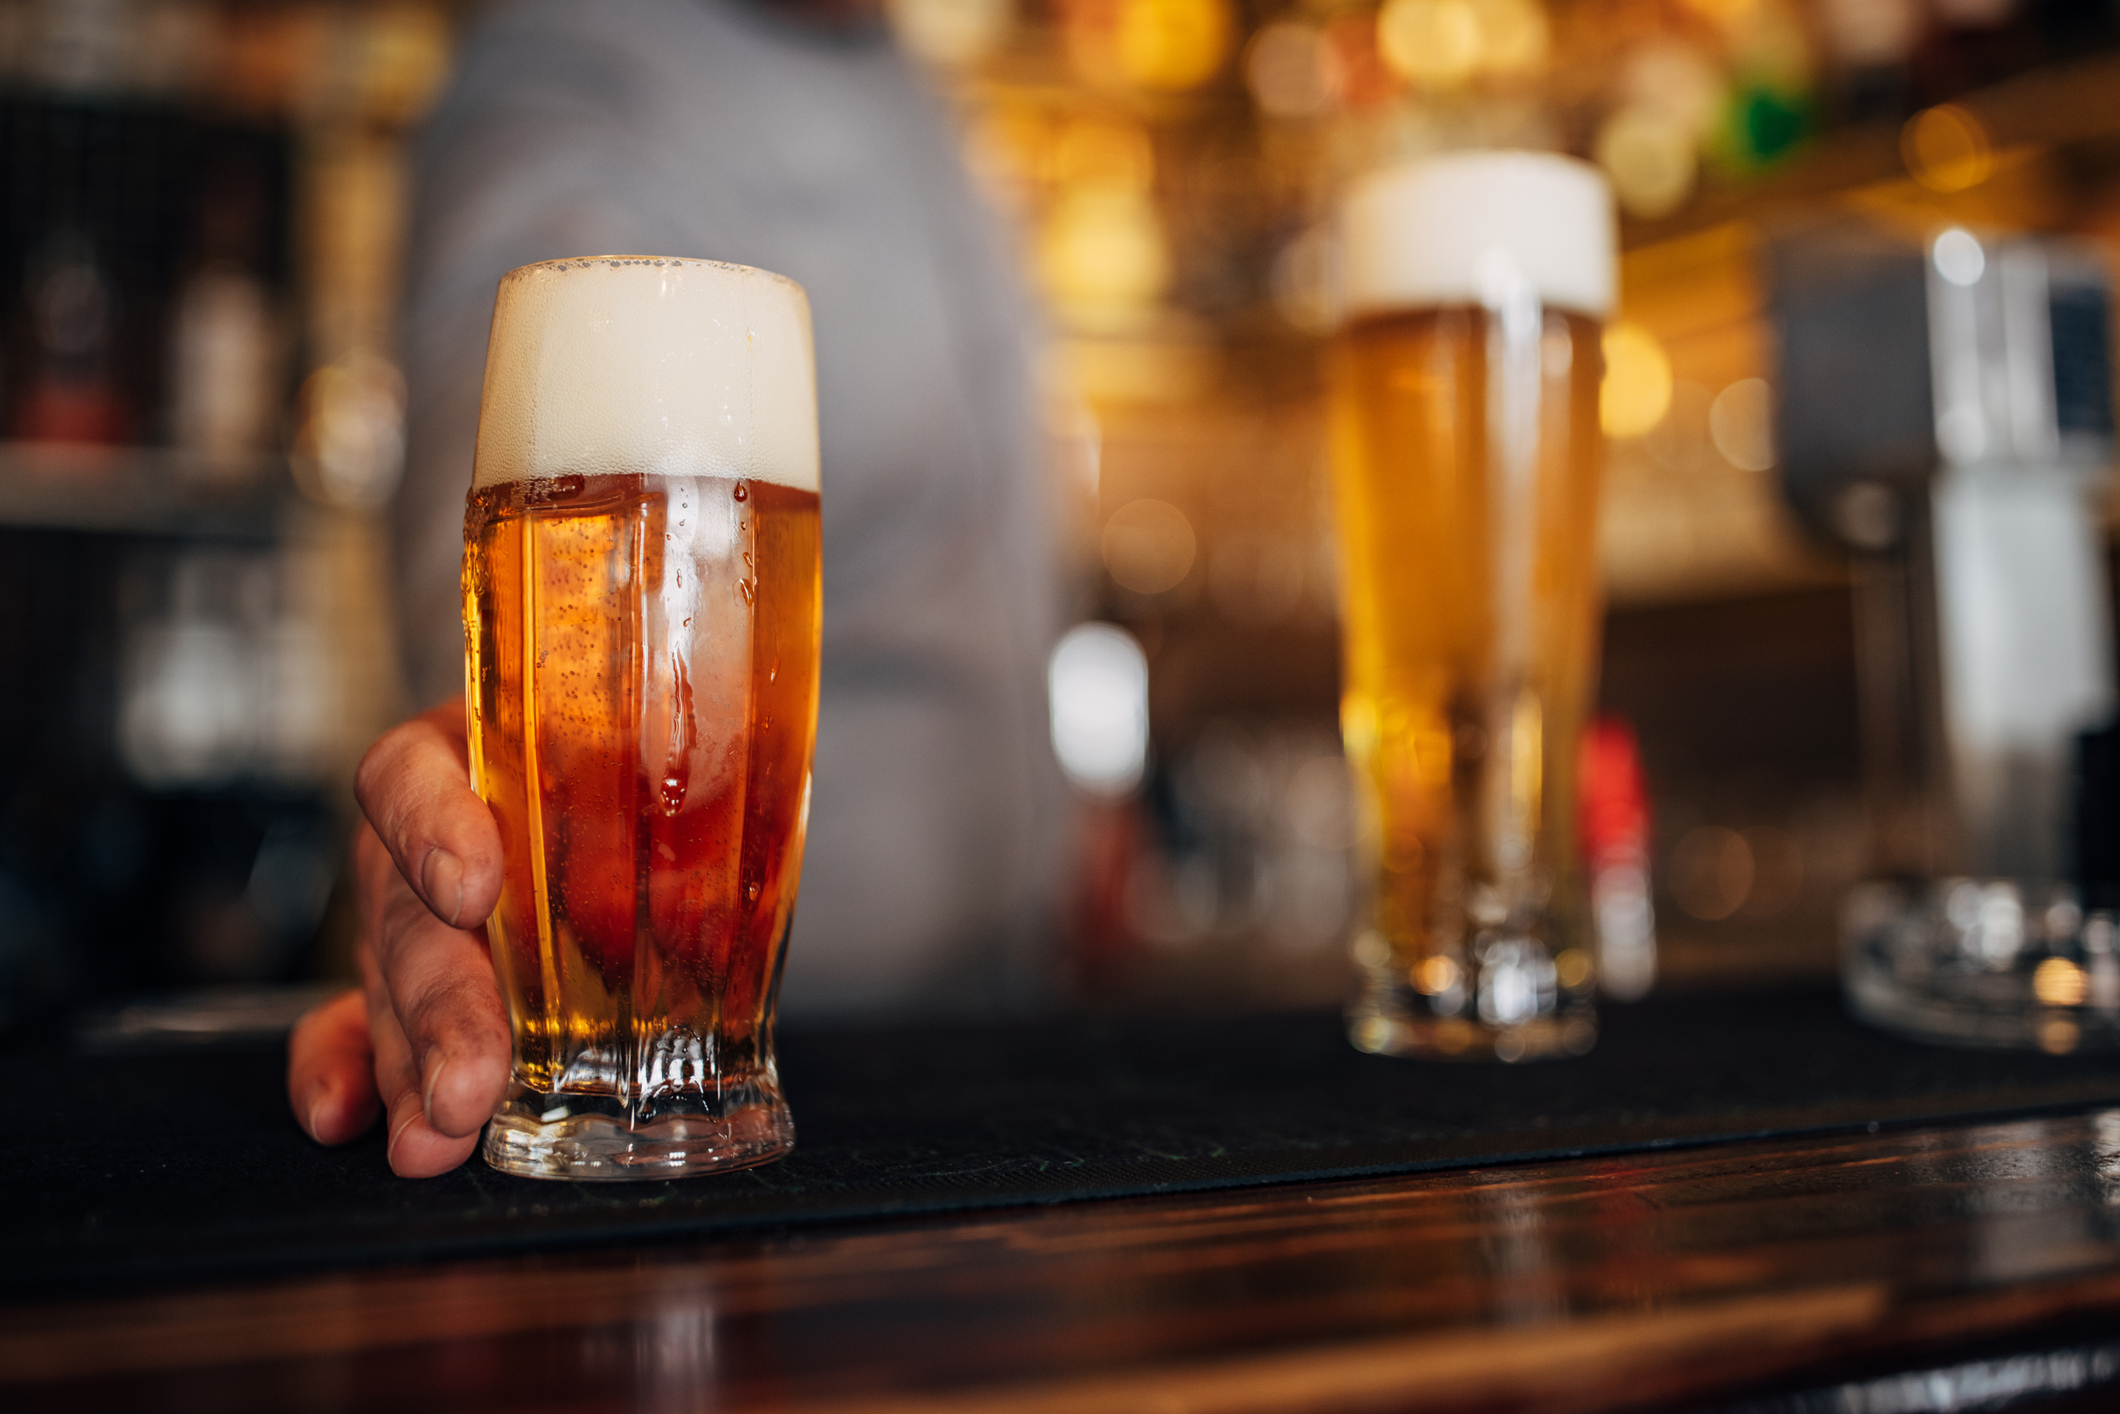 Ανησυχία στο Βέλγιο για έλλειψη μπύρας λόγω καιρικών συνθηκών